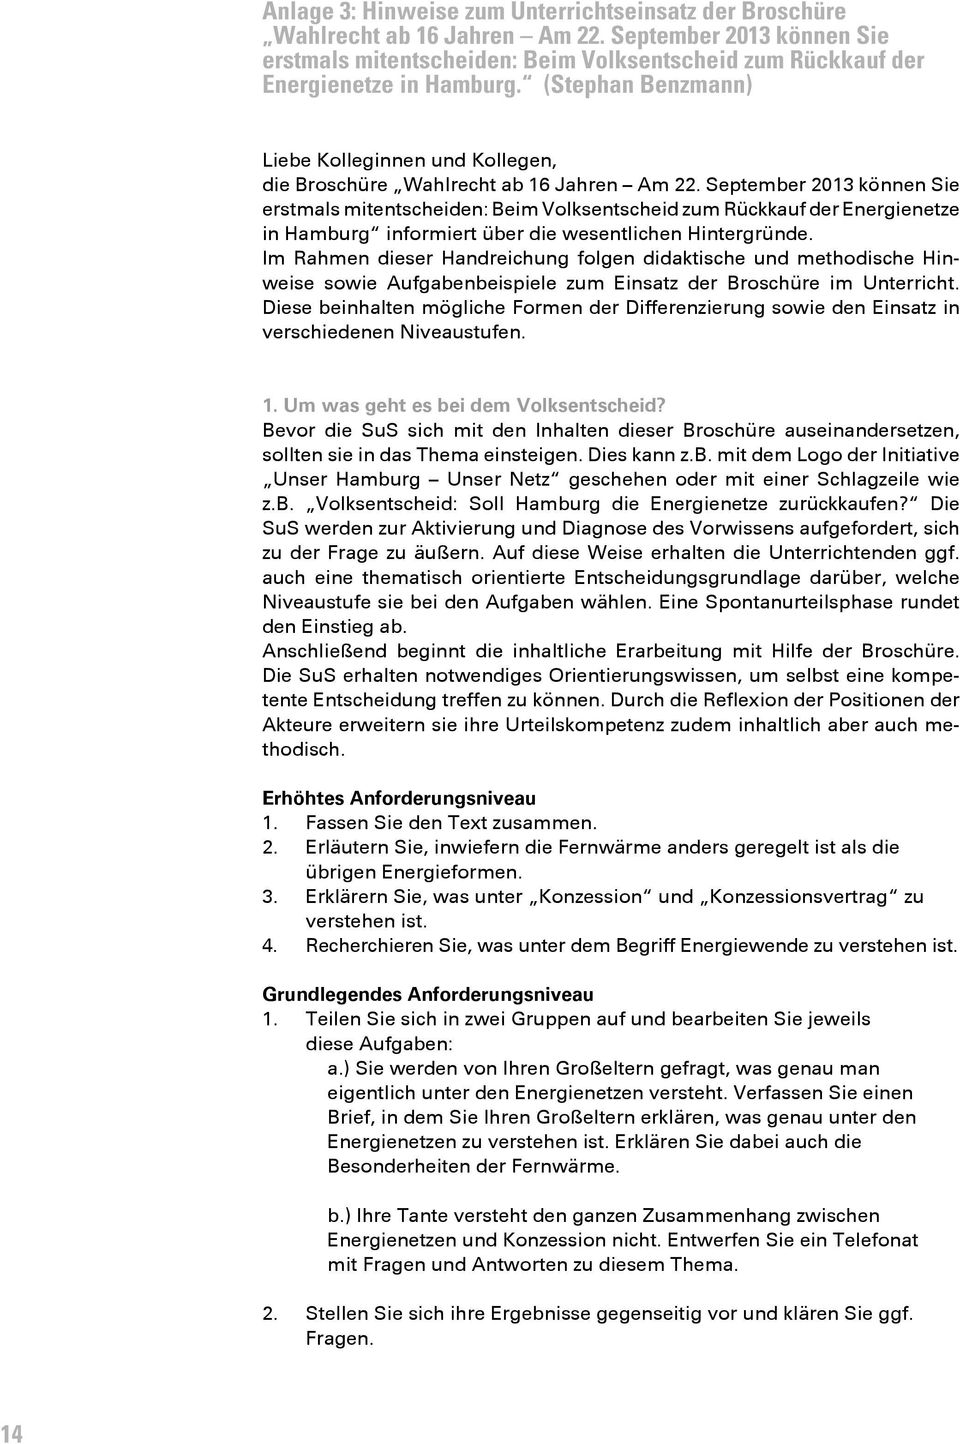 September 2013 können Sie erstmals mitentscheiden: Beim Volksentscheid zum Rückkauf der Energienetze in Hamburg informiert über die wesentlichen Hintergründe.